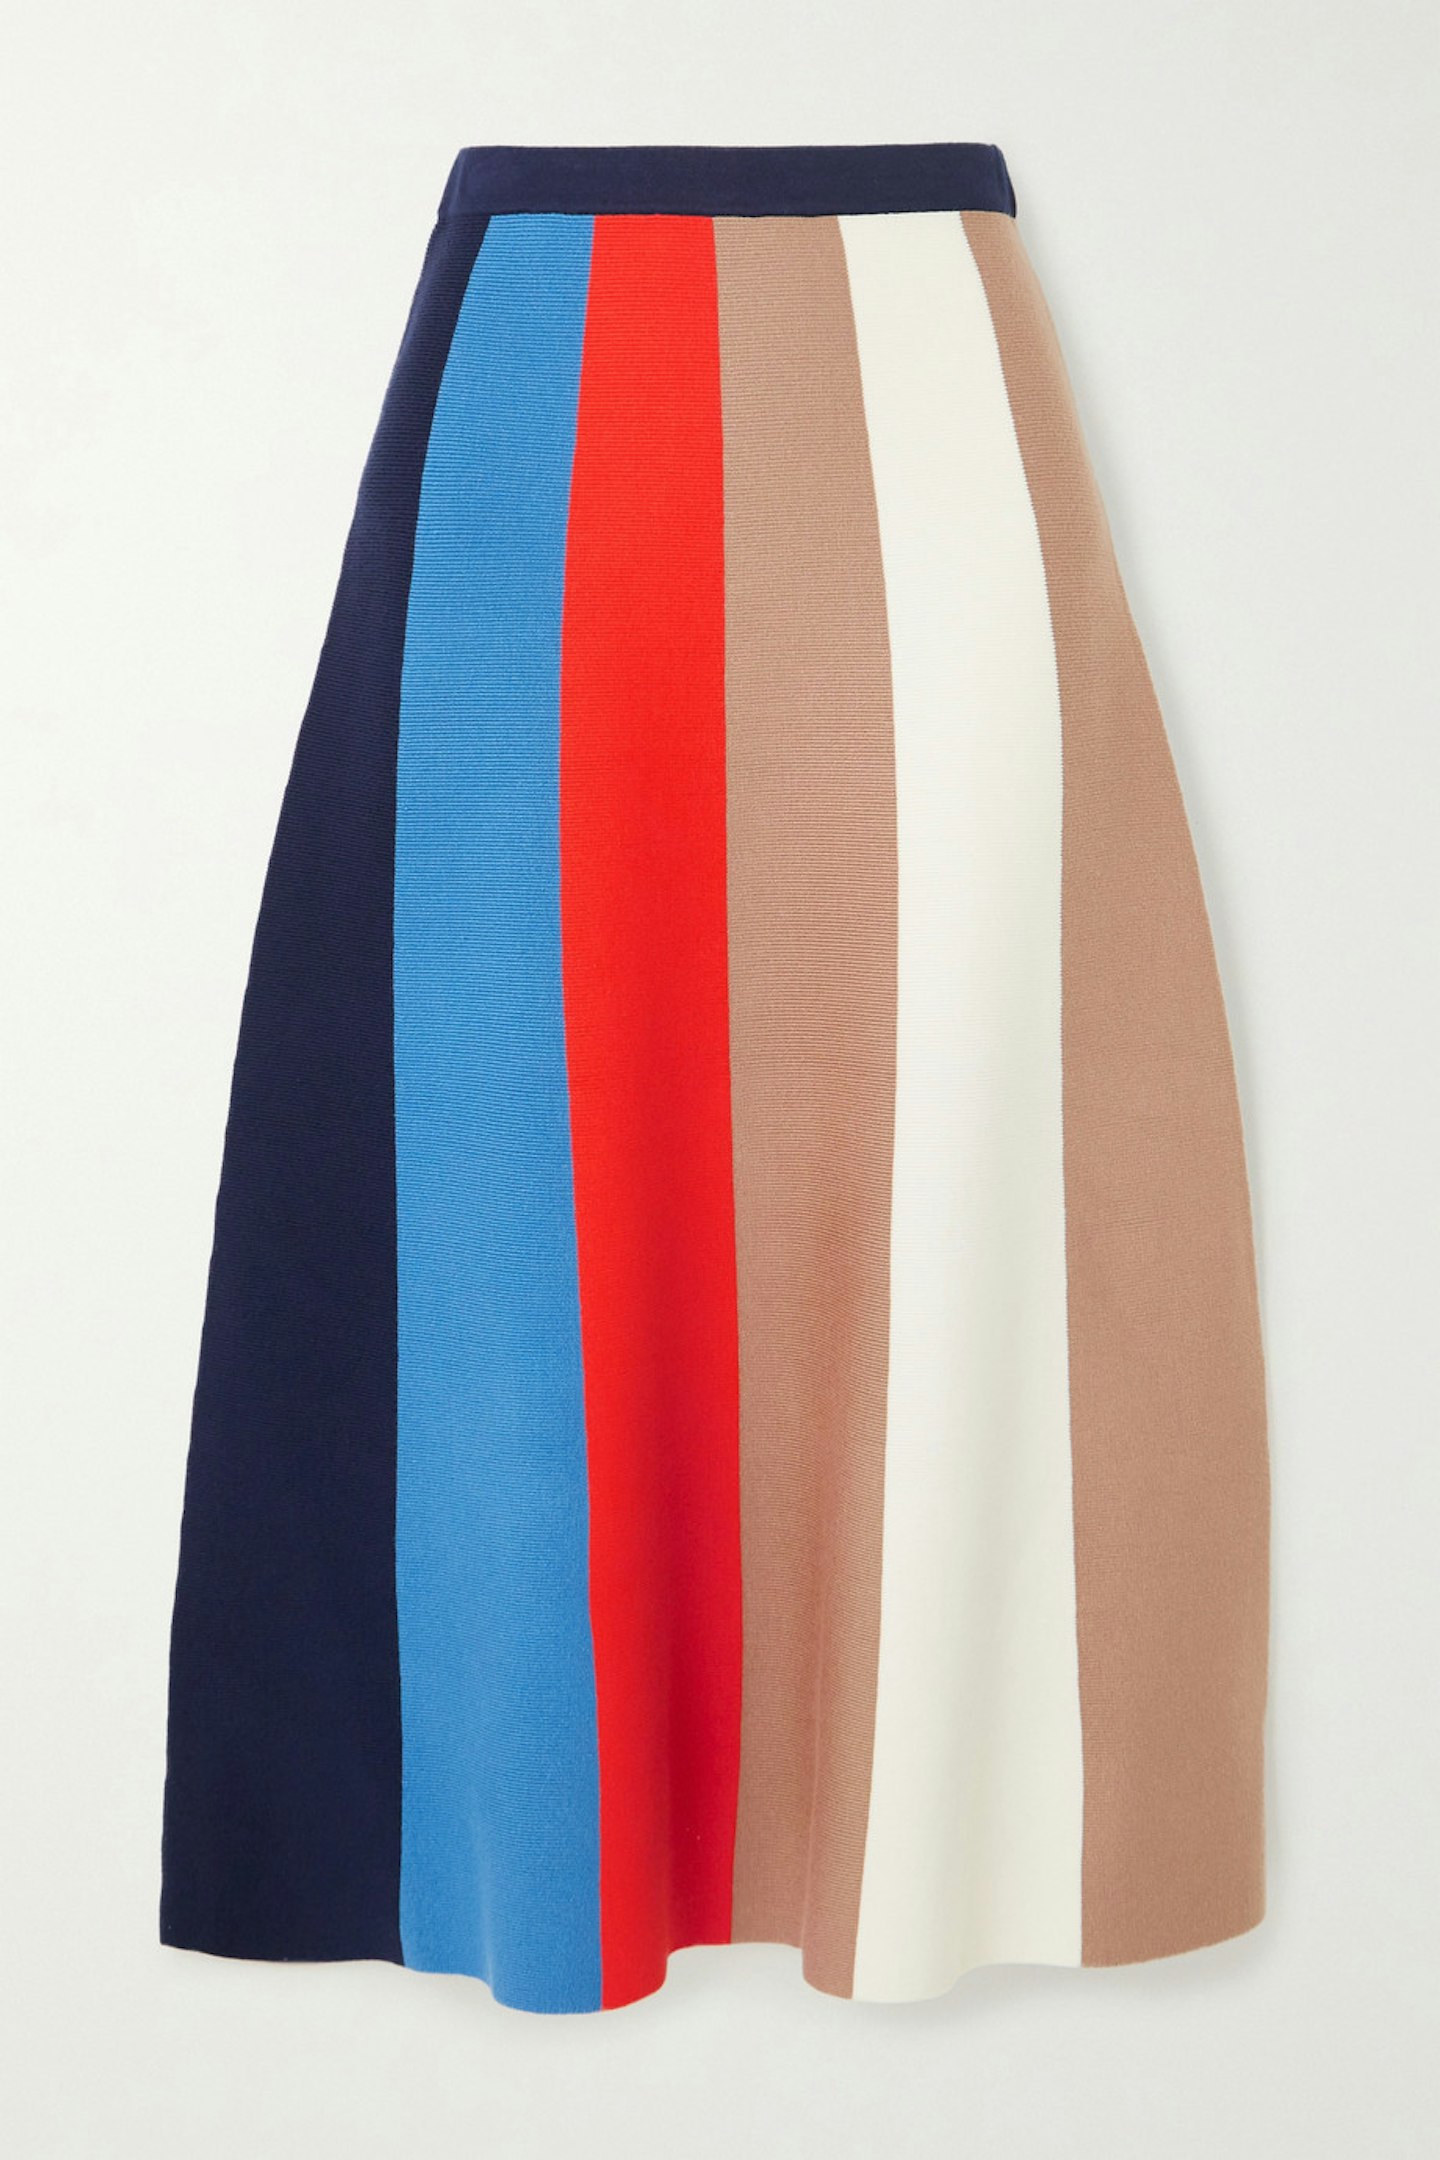 Stripe Skirt, £235, VVB